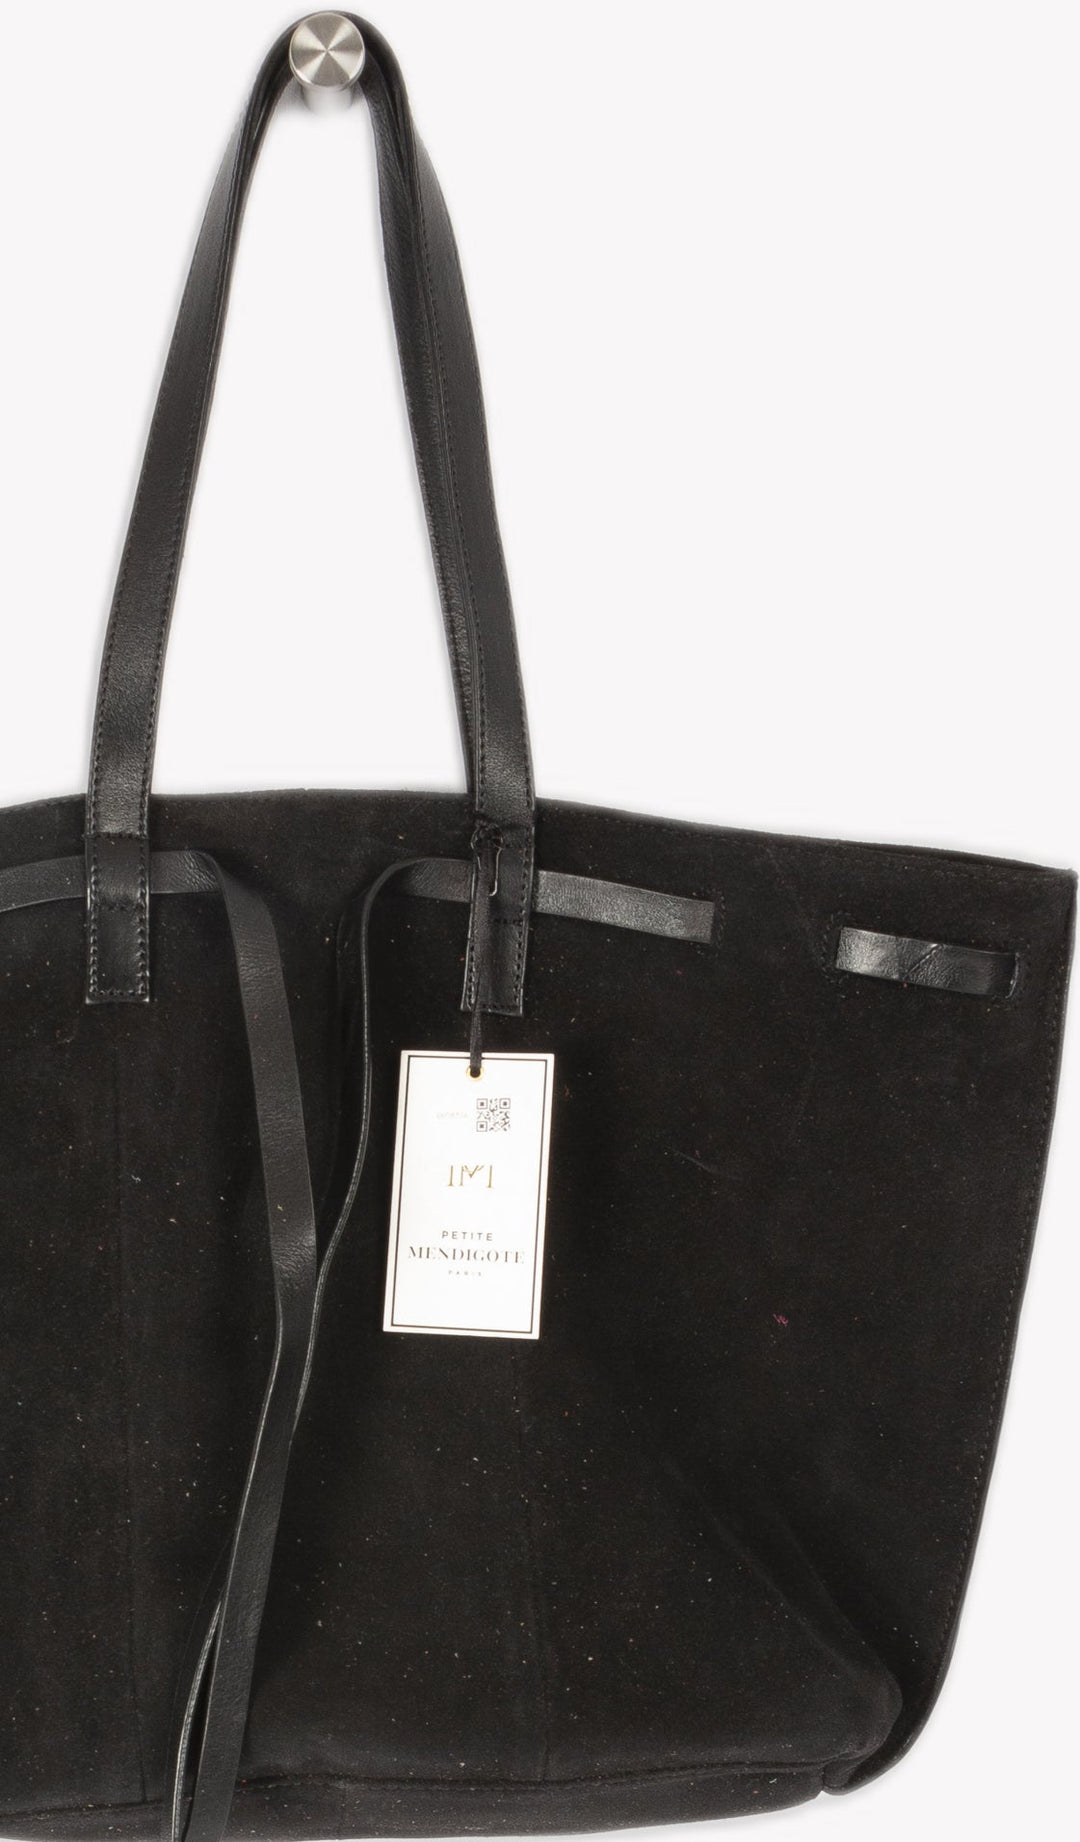 Black Patterned Handbag - TU